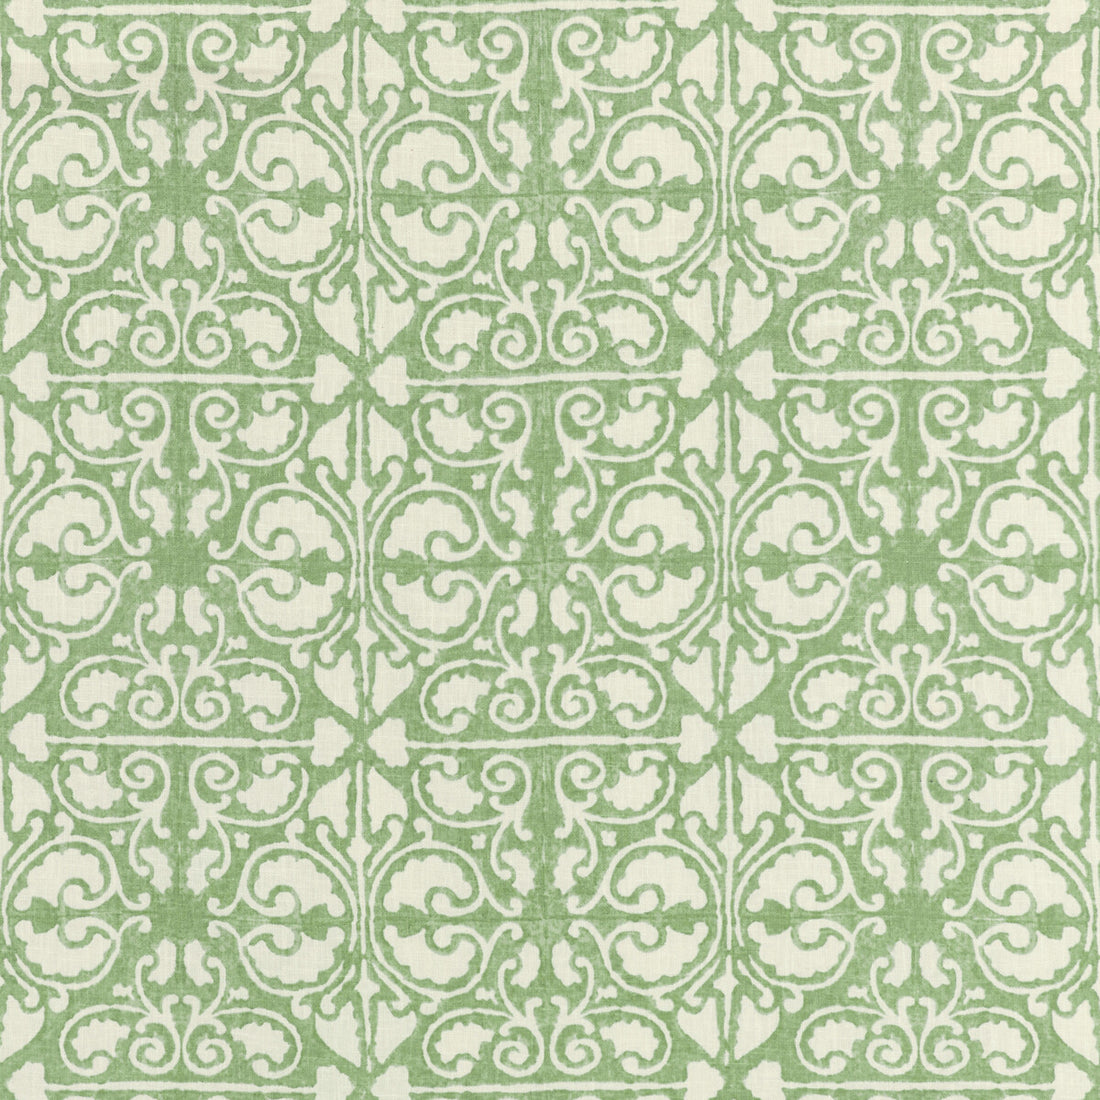 Kravet Basics fabric in agra tile-30 color - pattern AGRA TILE.30.0 - by Kravet Basics in the L&